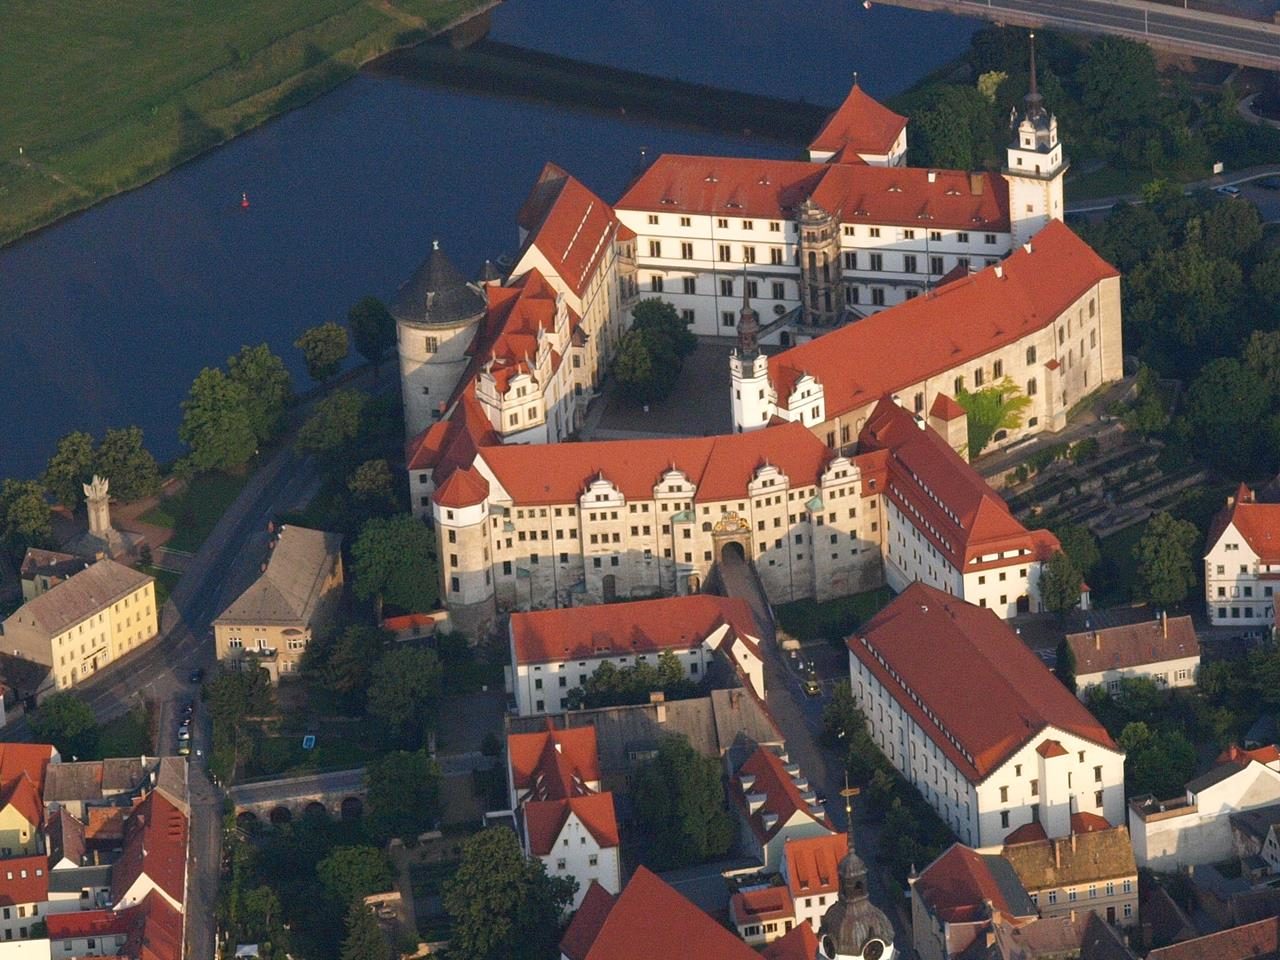 Luftbildaufahme von Shloss Hartenfels in Torgau (Foto Wolkenkratzer)